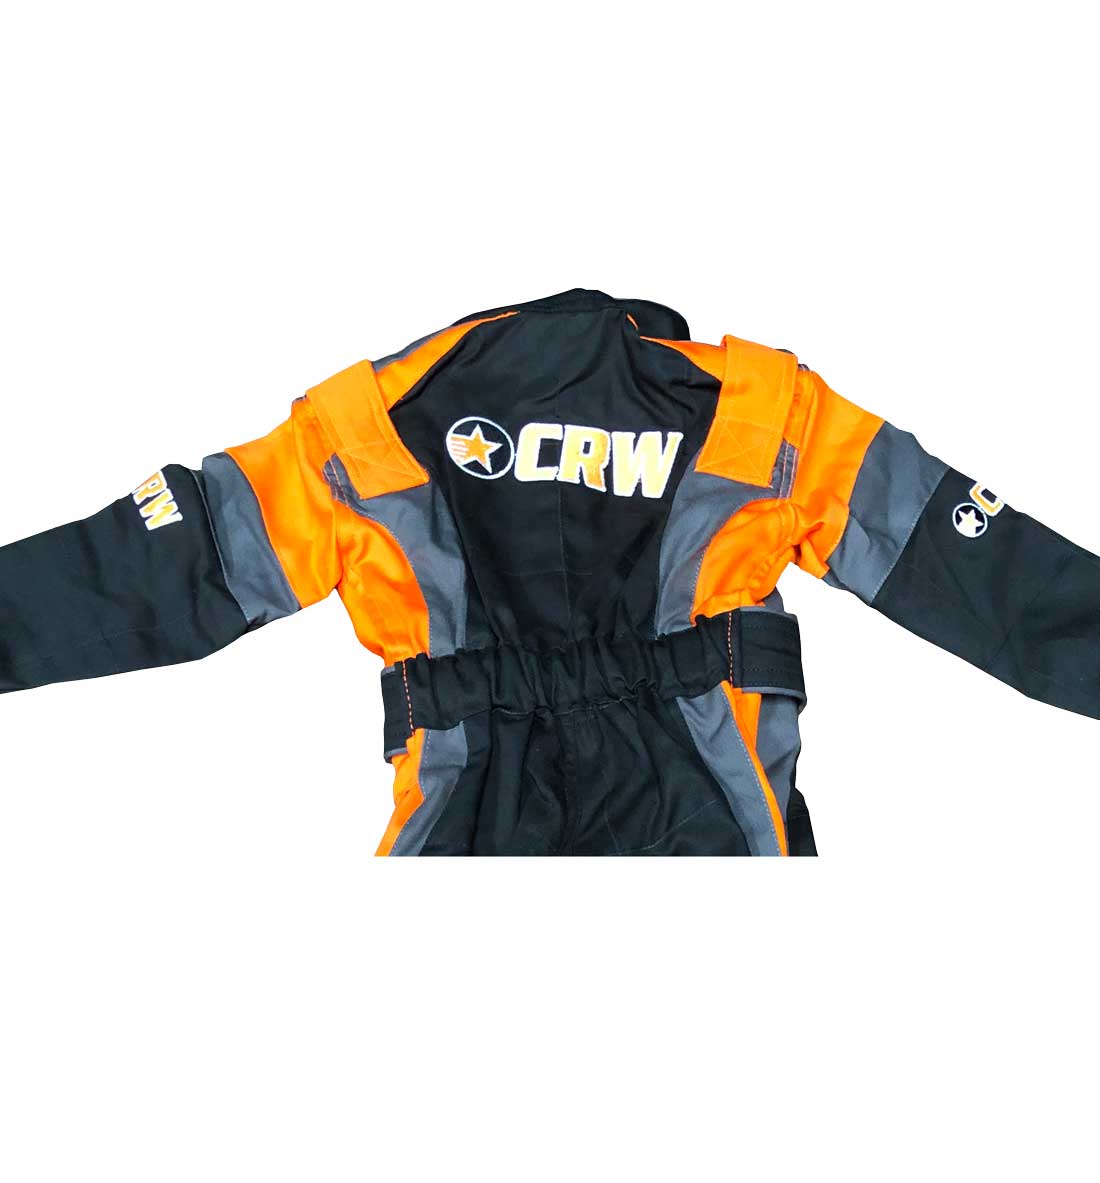 Kids Podium Pit Crew Suit - Black/Grey/Orange